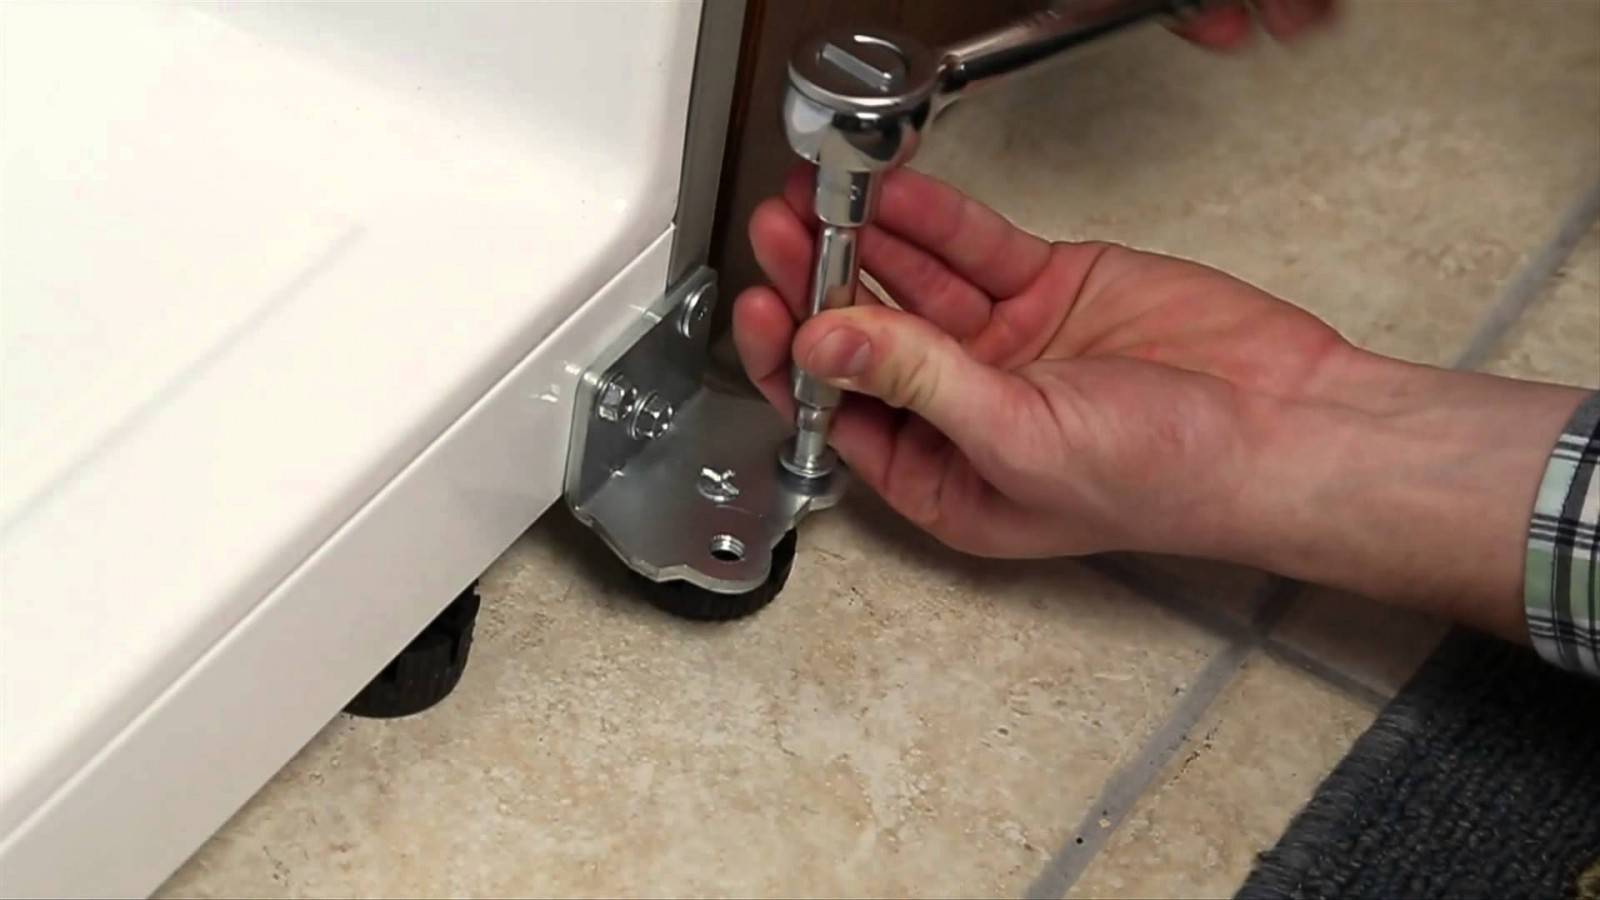 Ремонт двери холодильника своими руками: регулировка, устранение скрипа и провисания